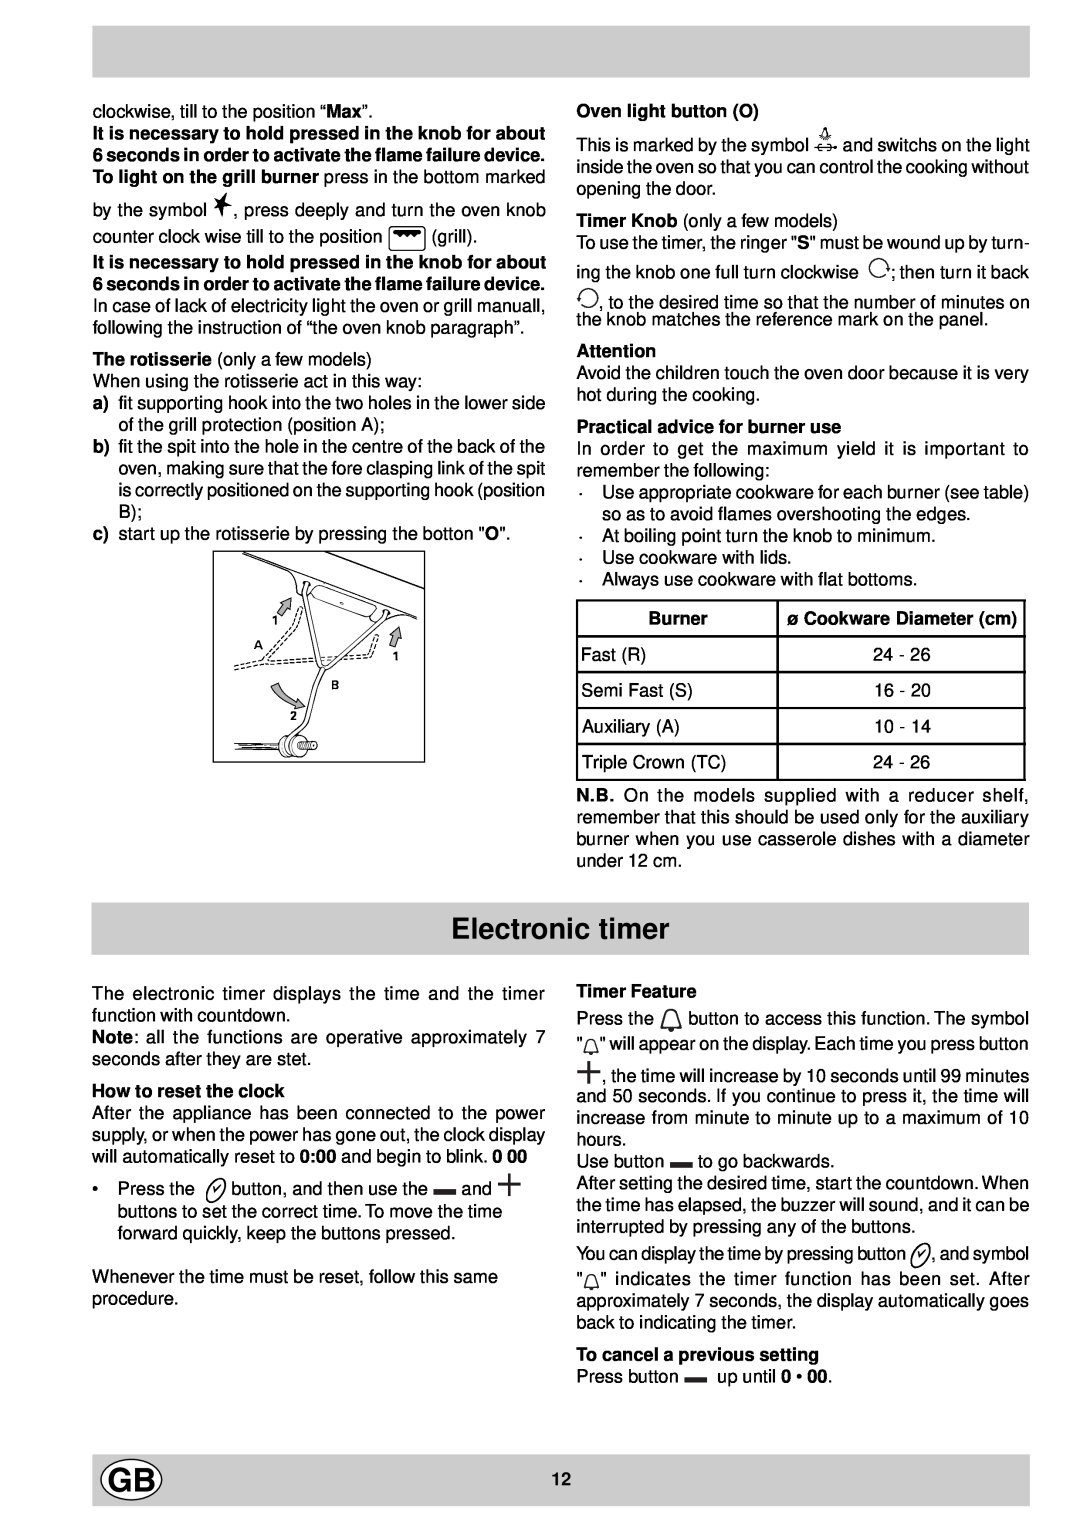 Indesit K 647 GS/G Electronic timer, Oven light button O, Practical advice for burner use, Burner, ø Cookware Diameter cm 